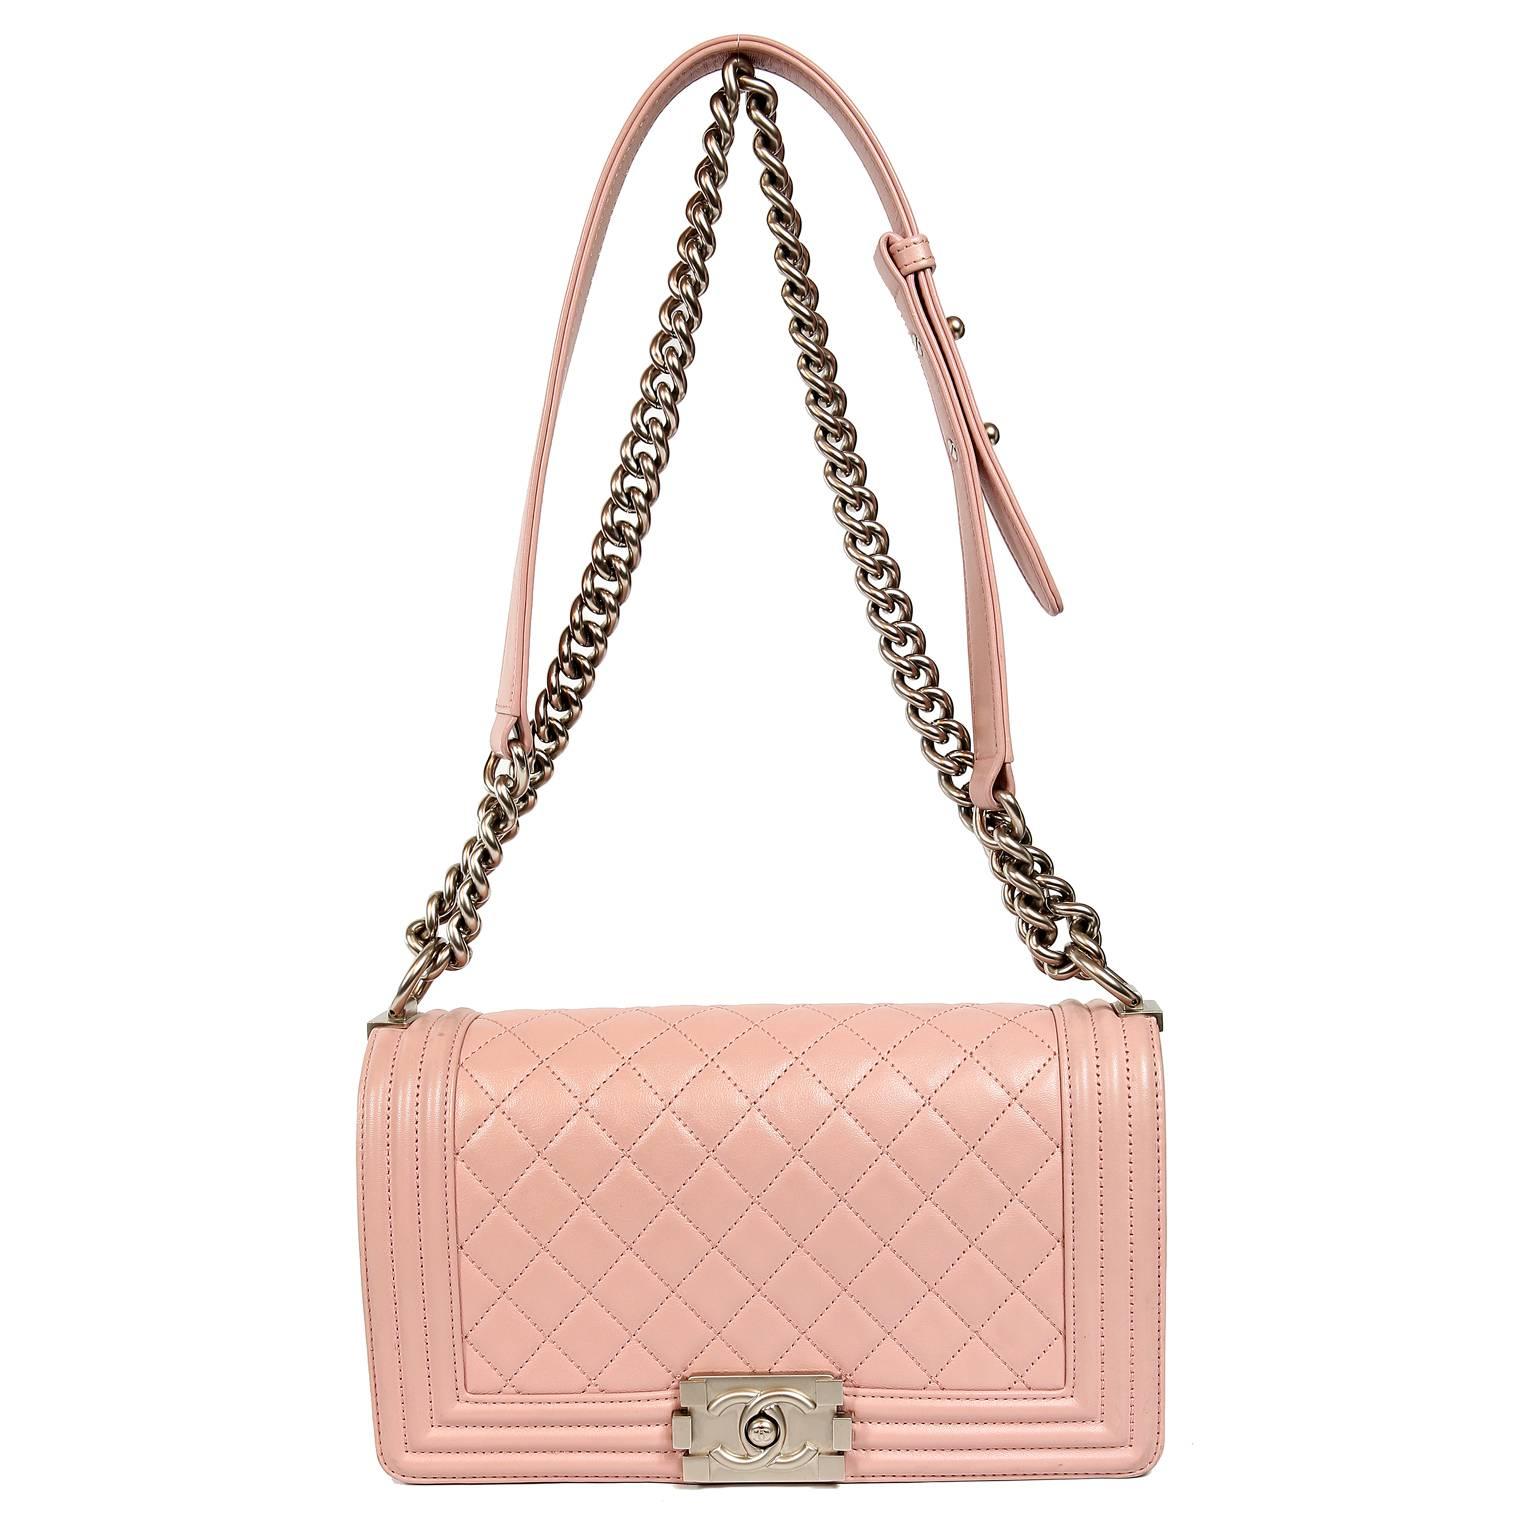 Chanel Blush Pink Leather Medium Boy Bag 6